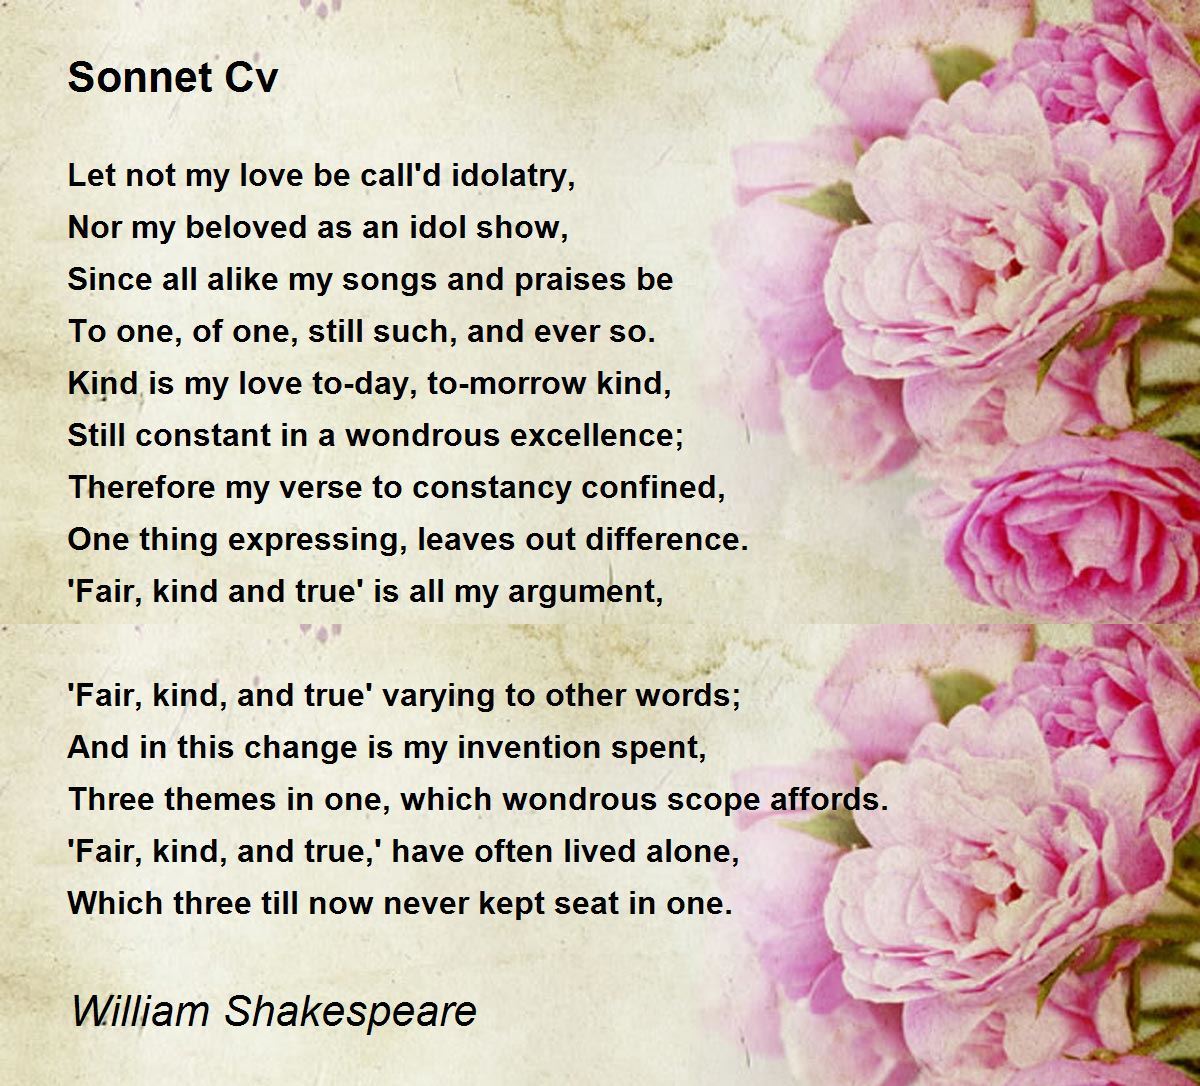 sonnet cv poem by william shakespeare